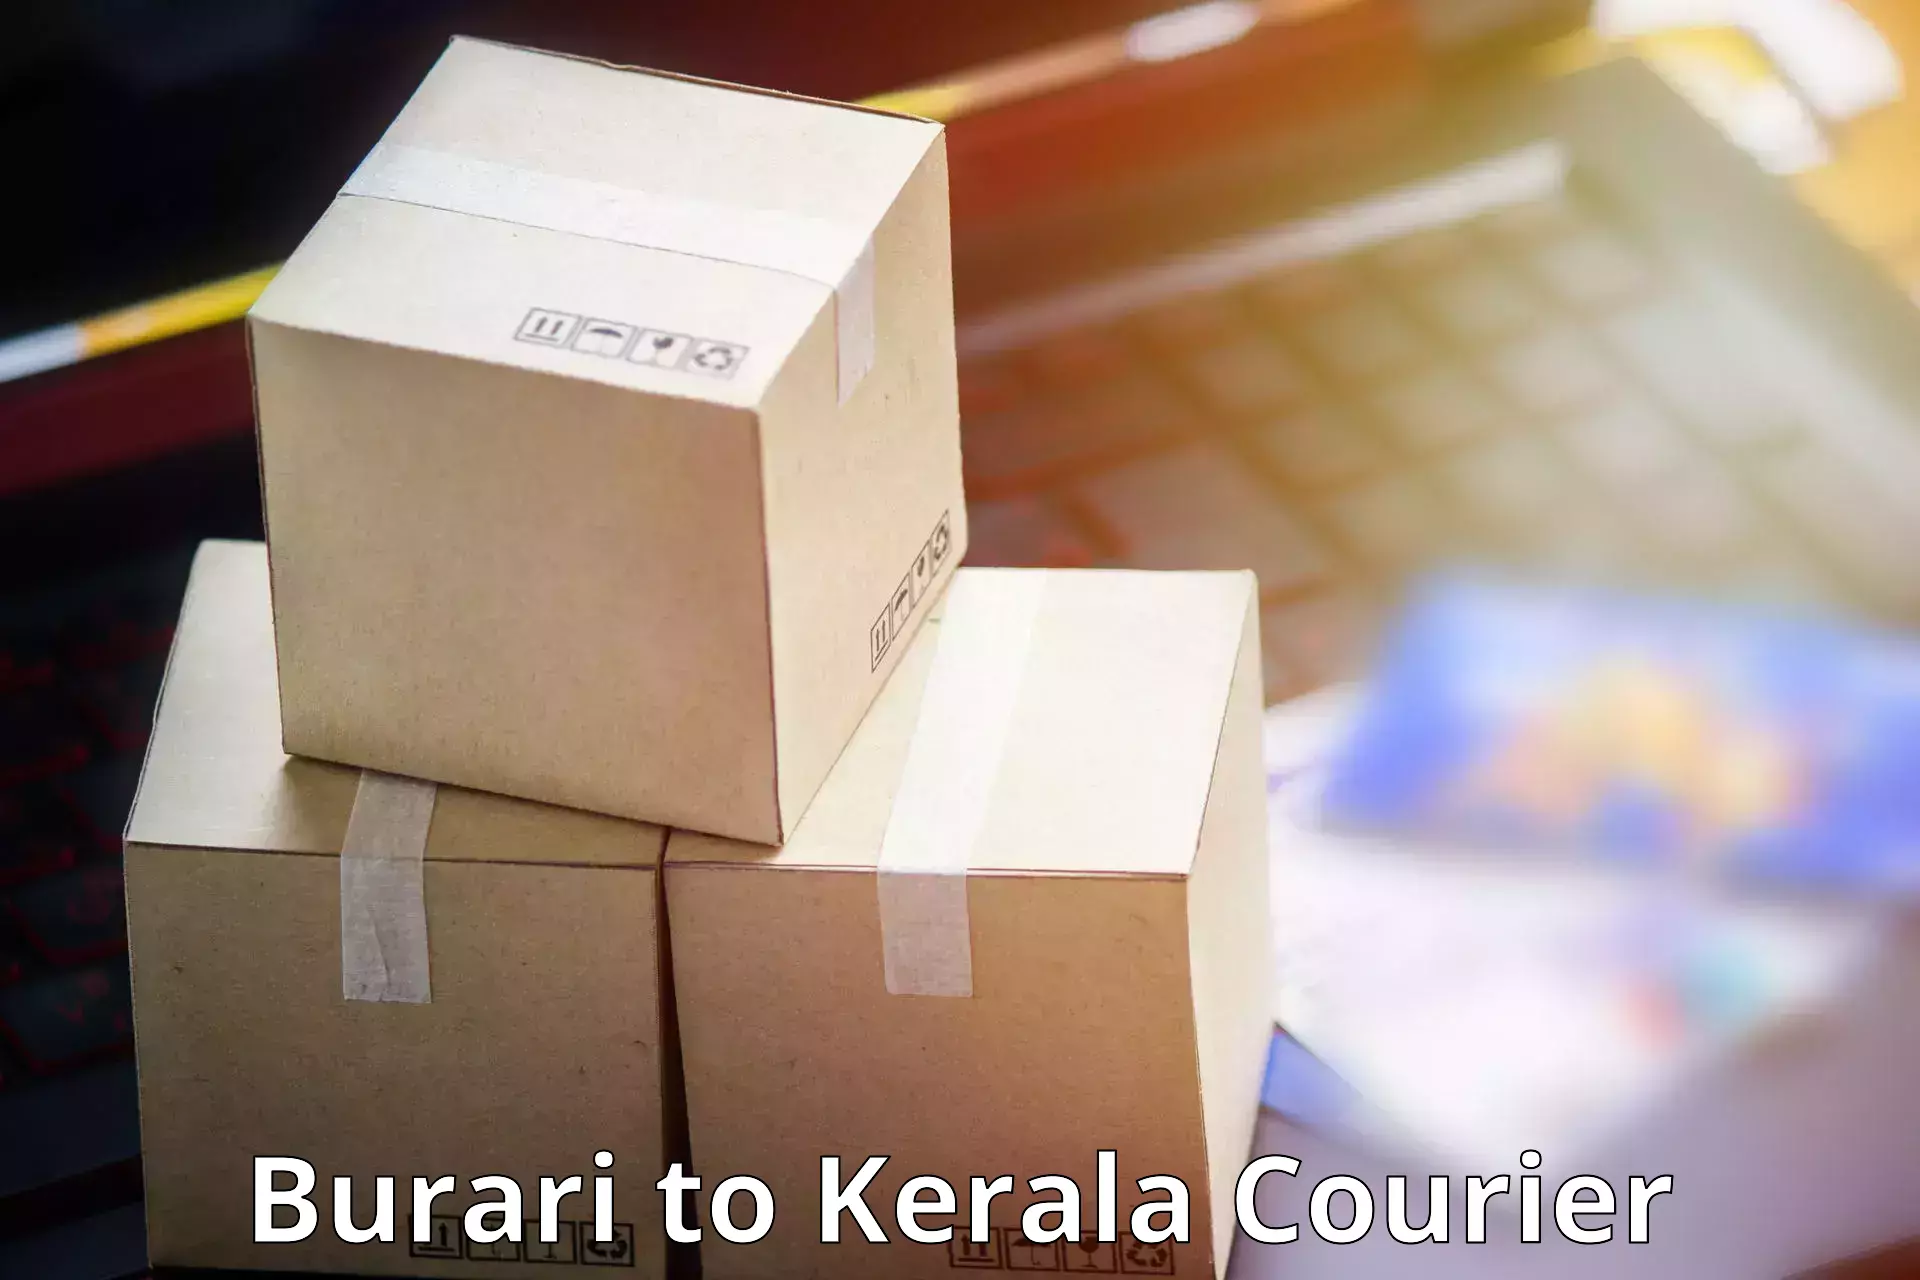 Urgent courier needs Burari to Kazhakkoottam